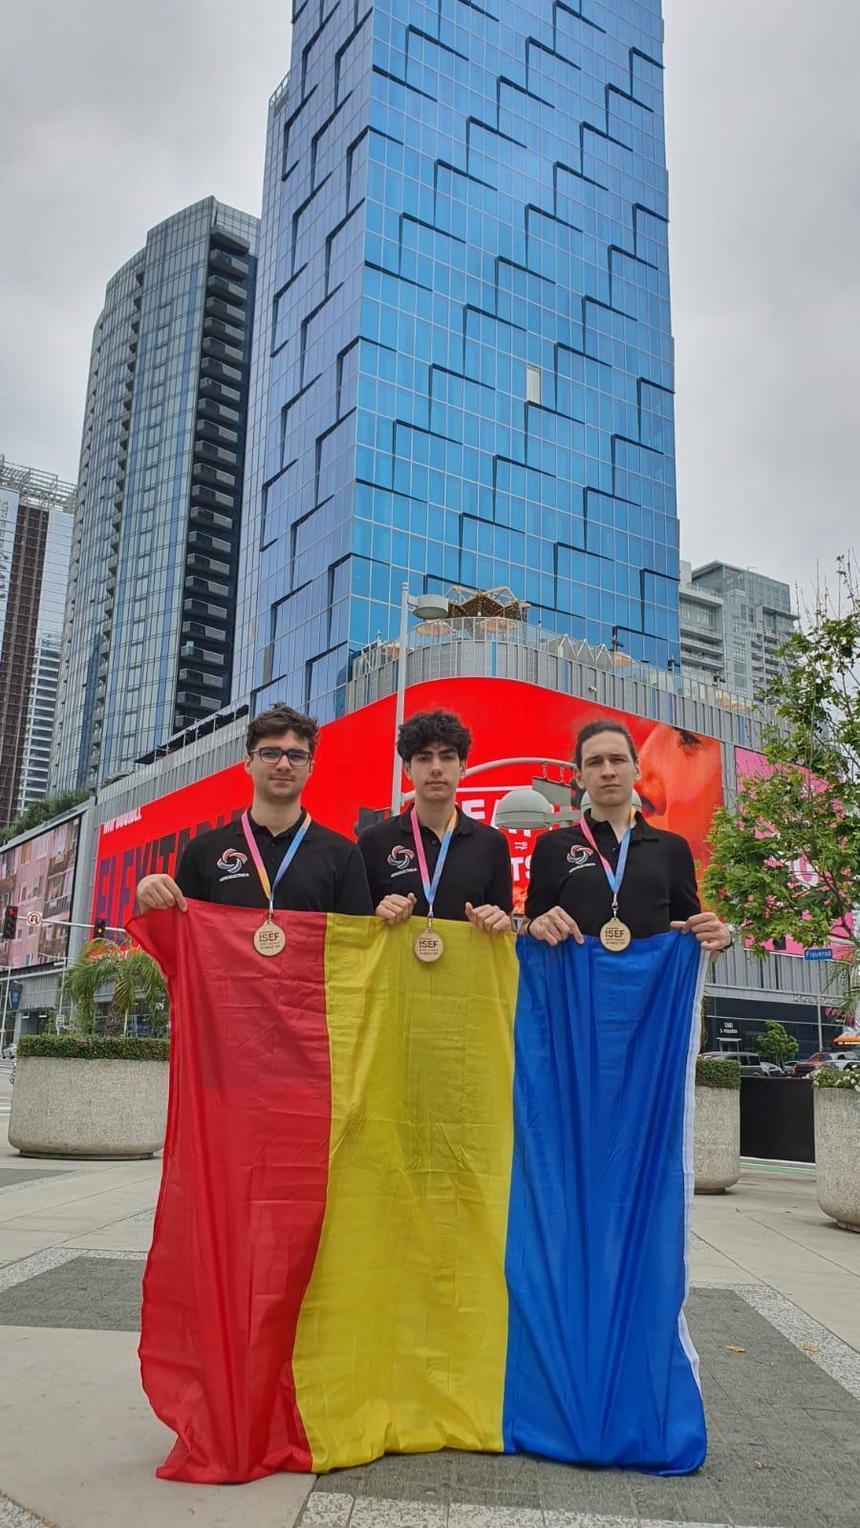 Trei elevi din România, premiaţi la International Science and Engineering Fair, cea mai importantă şi prestigioasă competiţie de ştiinţă şi inginerie din lume, pentru competitorii sub 21 de ani - FOTO

